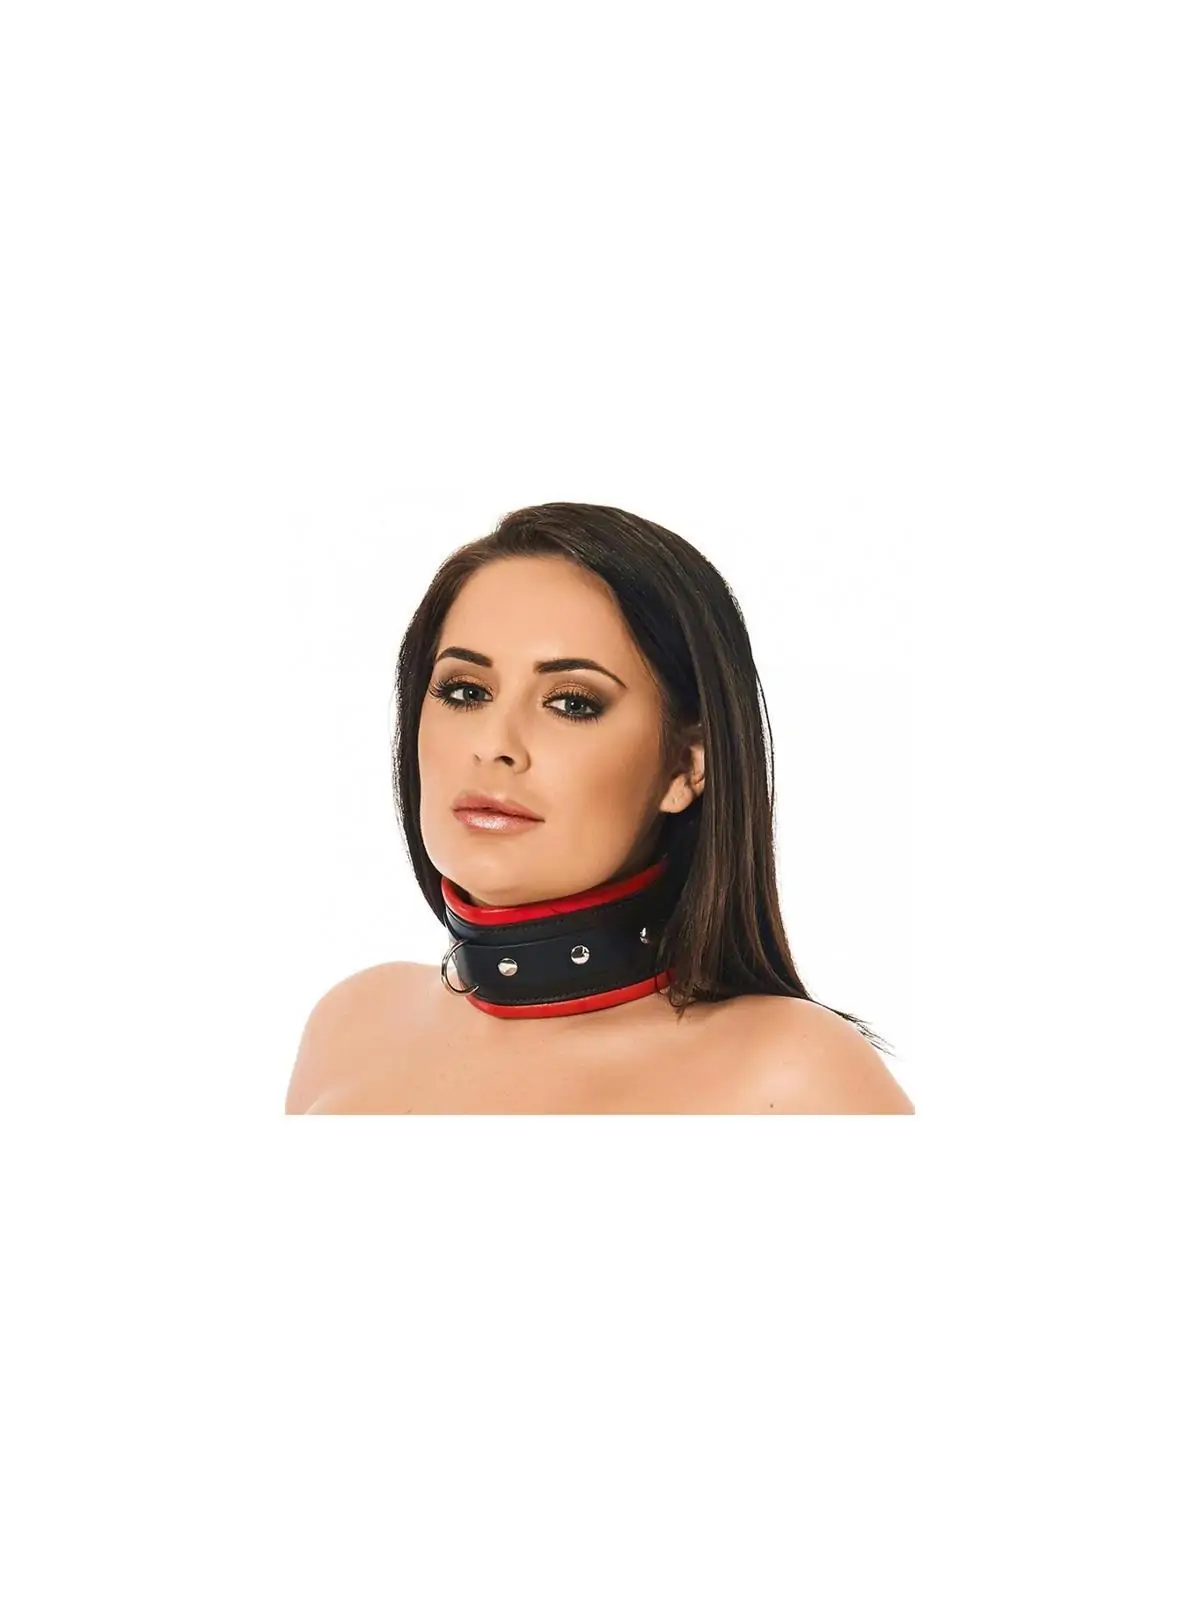 Halsband Lux von Bondage Play bestellen - Dessou24